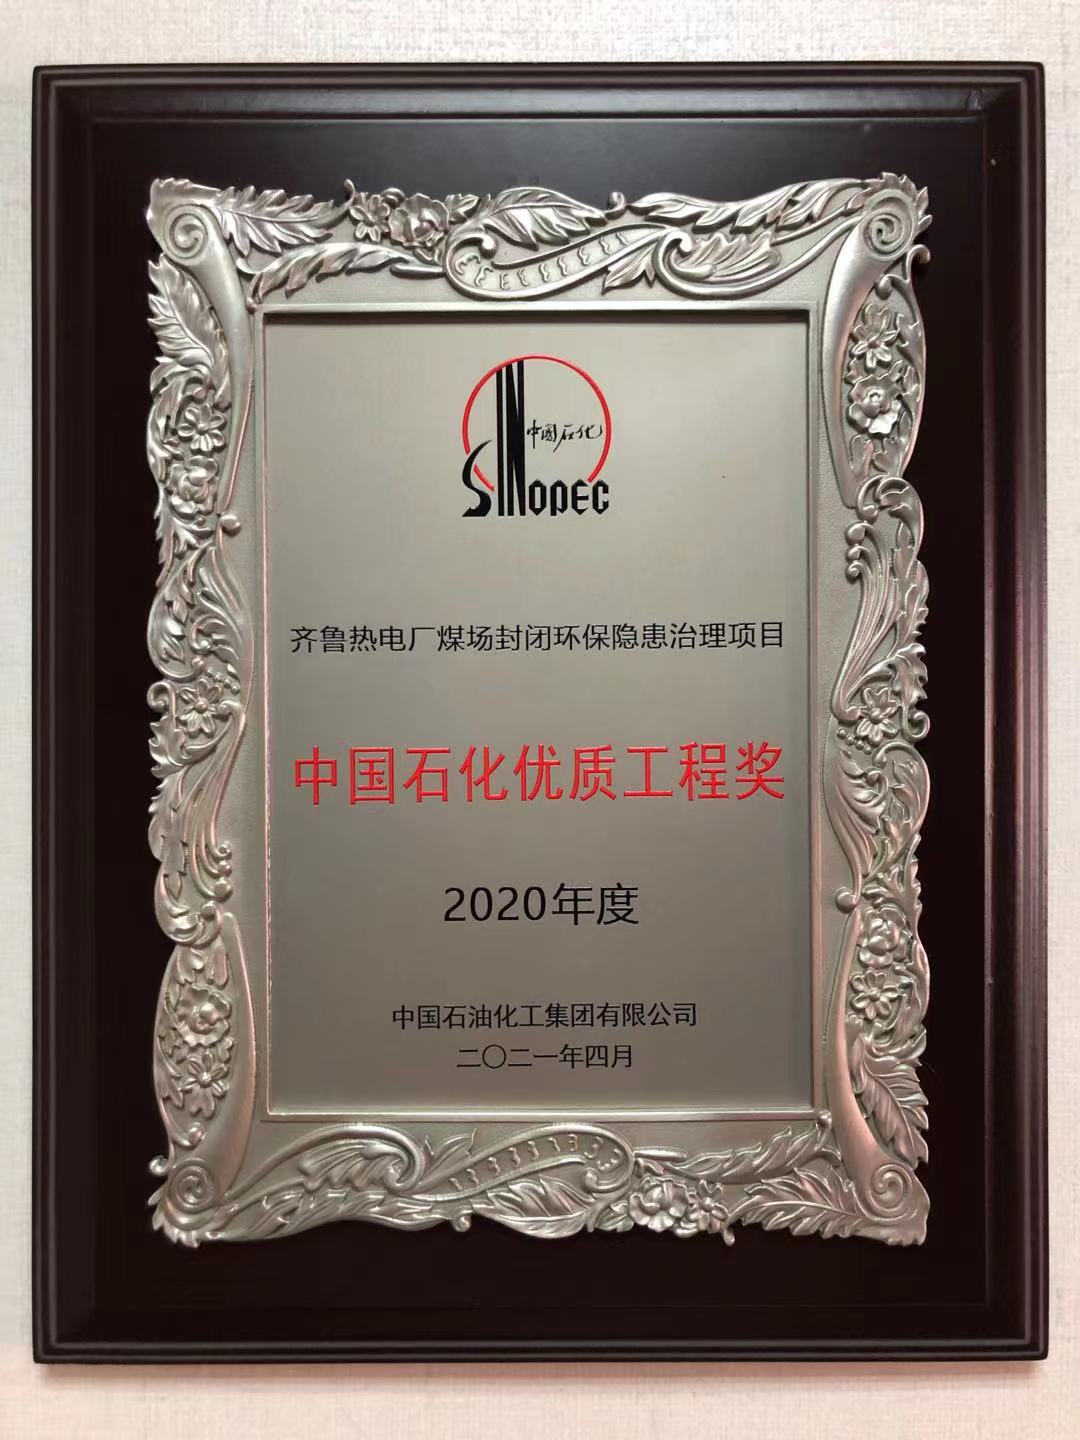 “齐鲁热电厂煤场封闭环保隐患治理项目”被评为2020年度中国石化优质工程奖